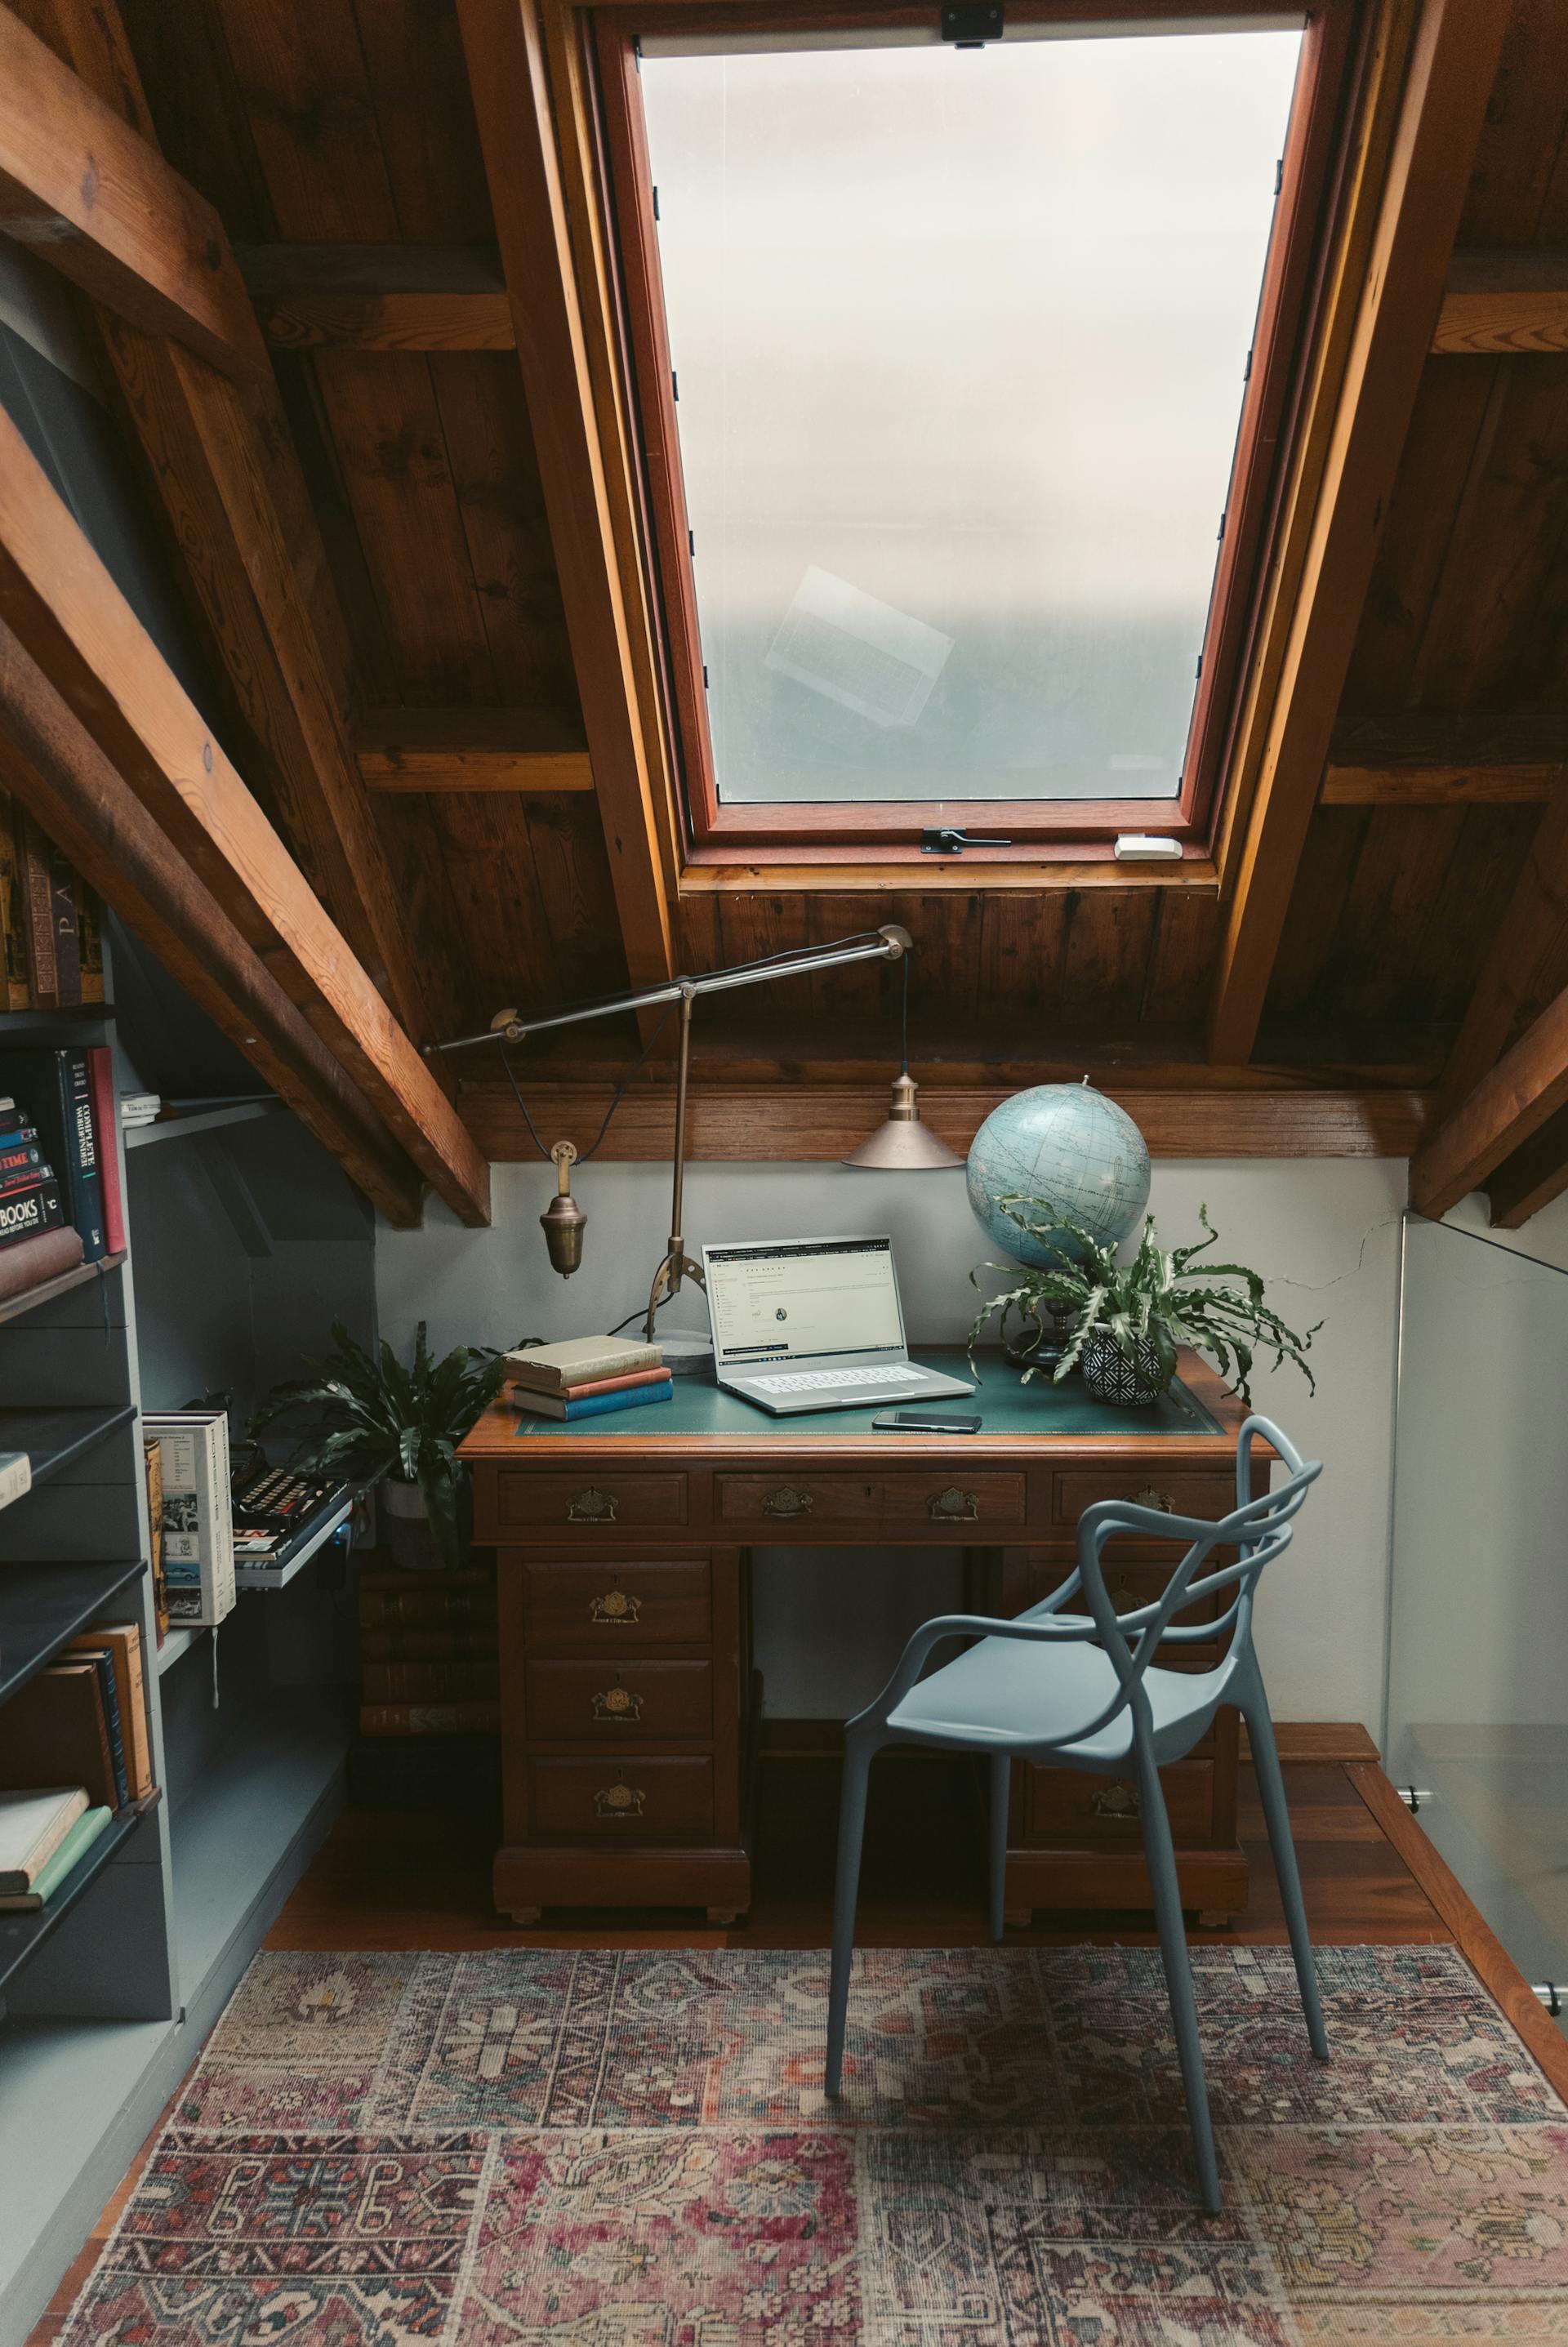 Une salle d'étude dans le grenier | Source : Pexels